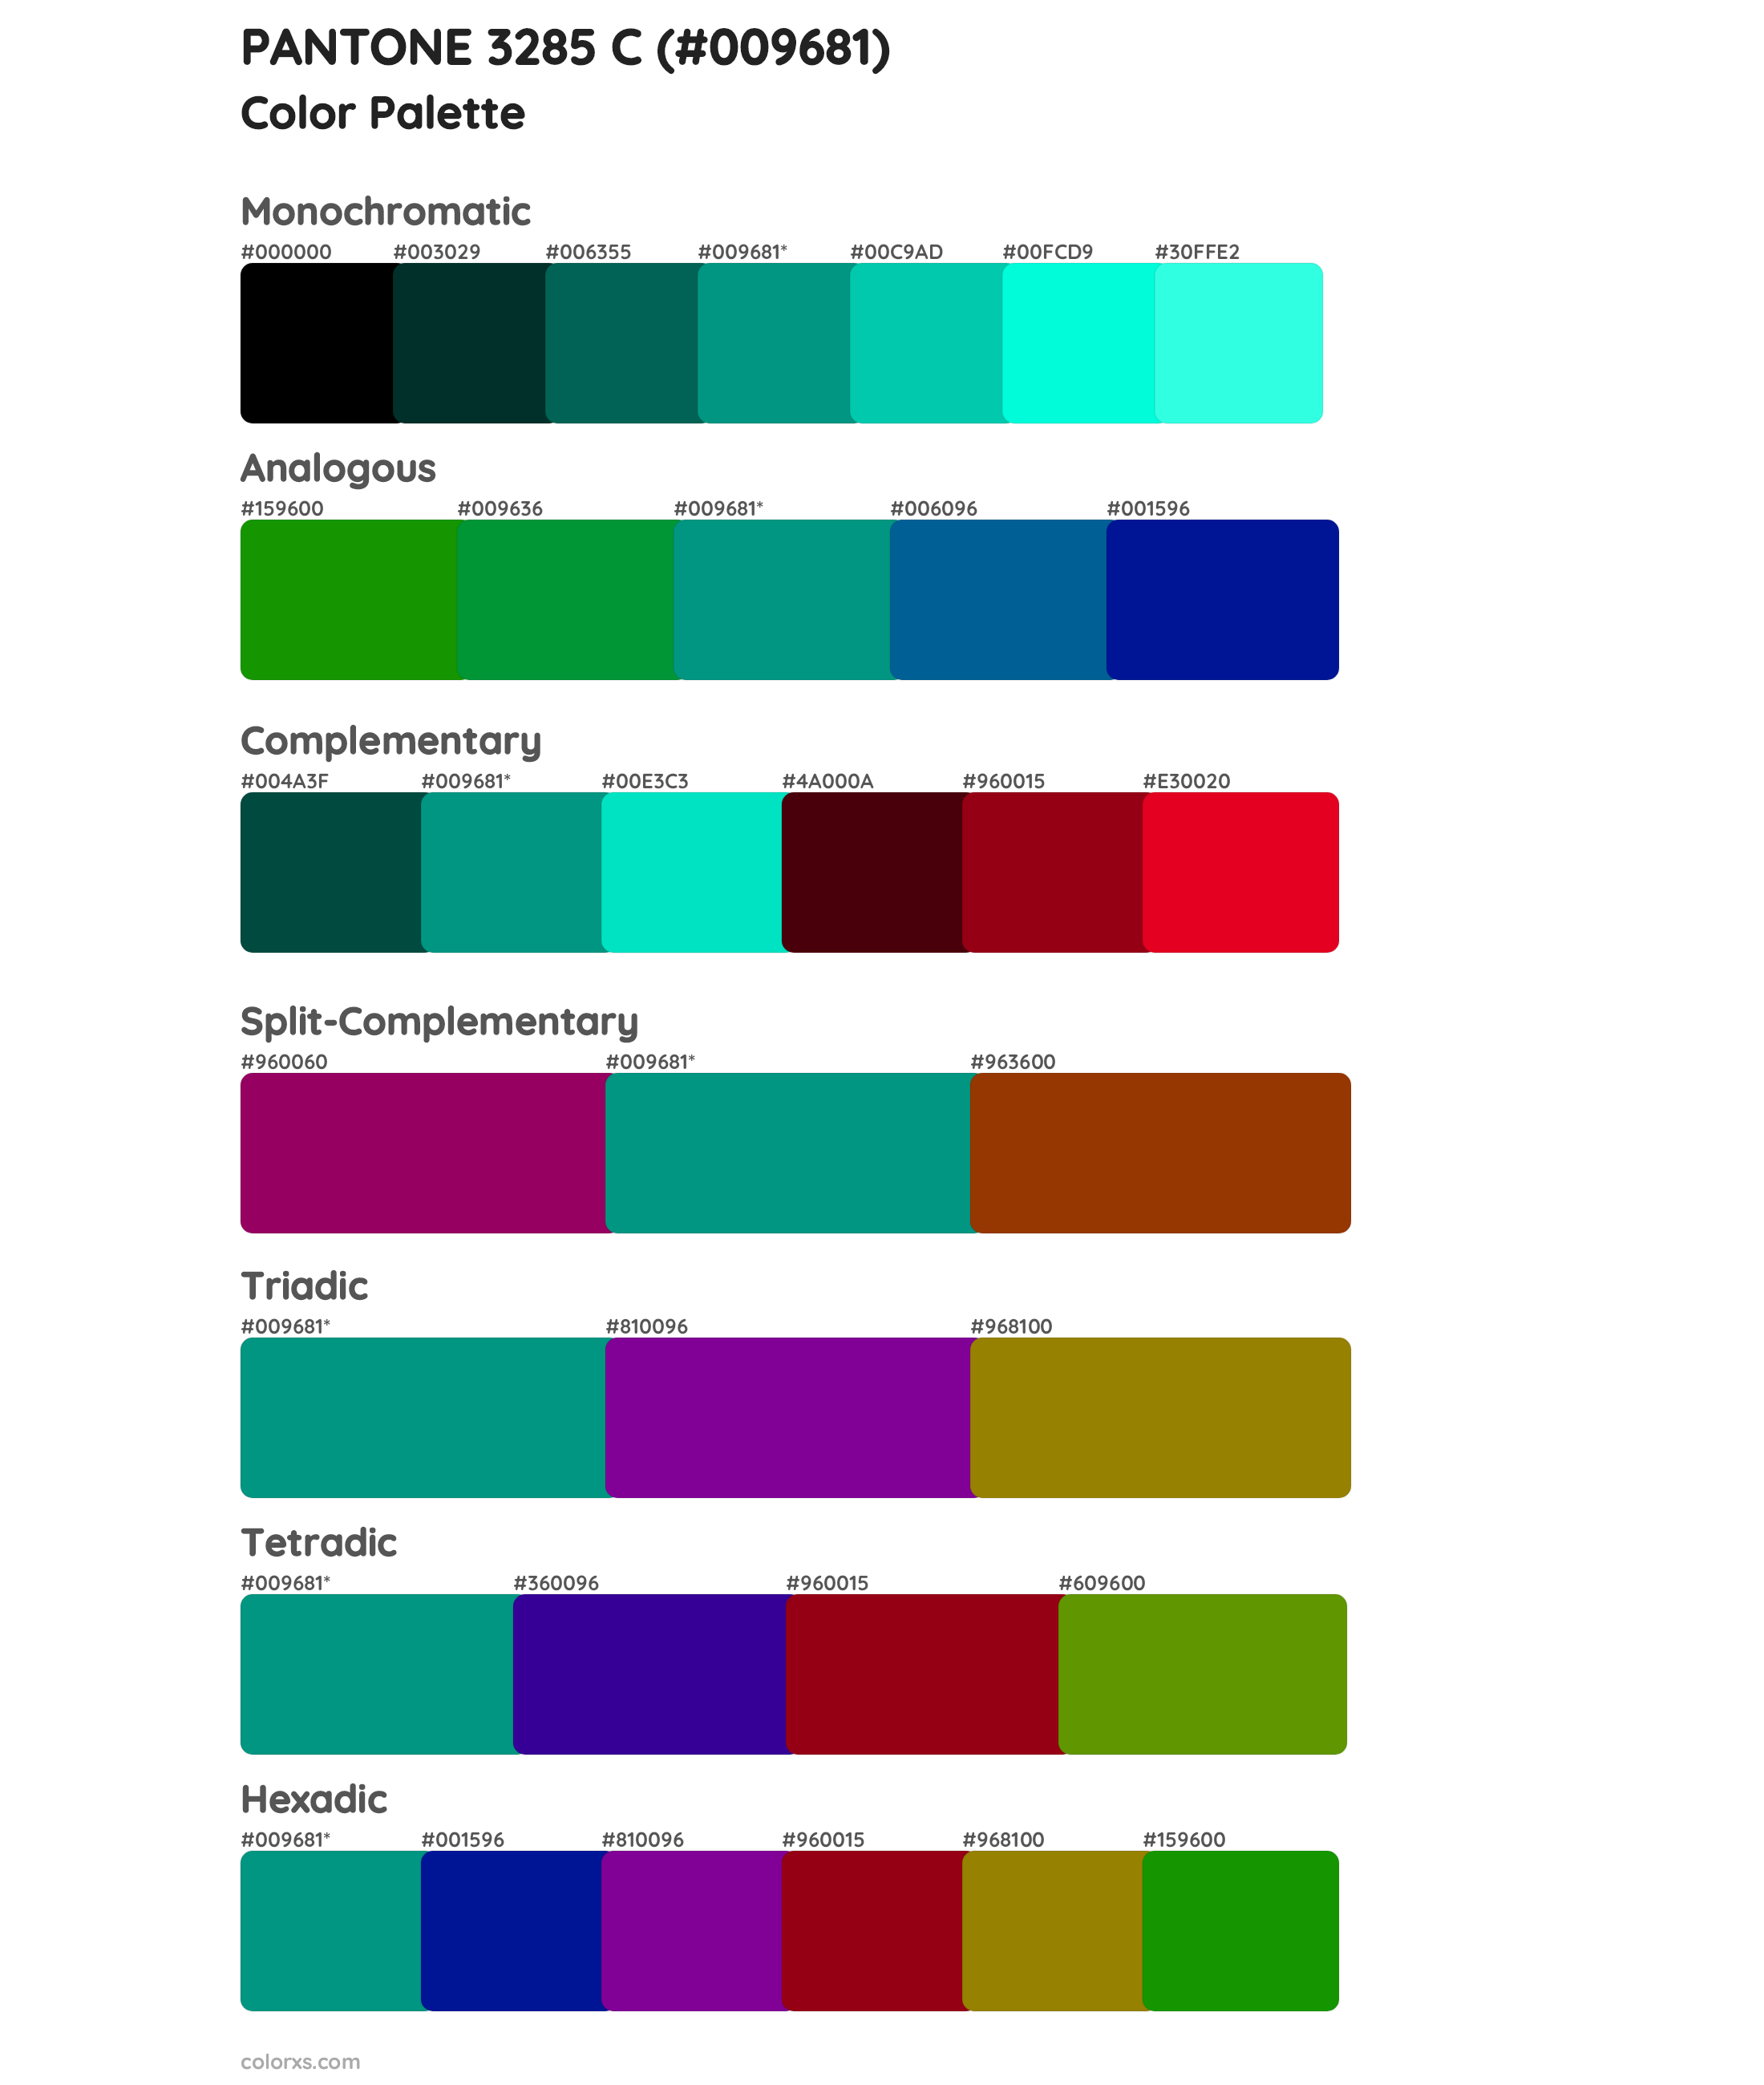 PANTONE 3285 C Color Scheme Palettes